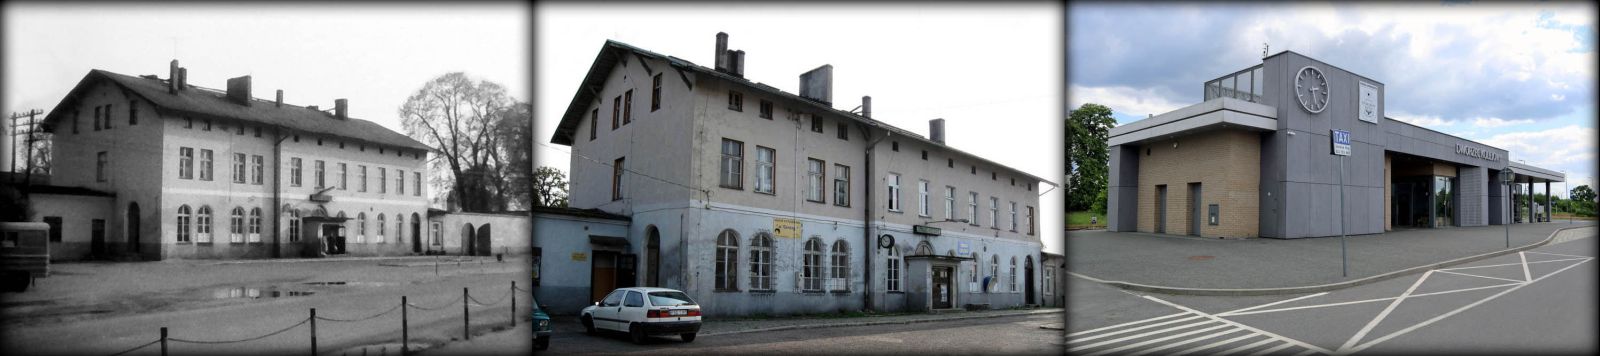 Dworzec w Strzelcach Krajeńskich Wschód w roku 1990, 2009, 2021.